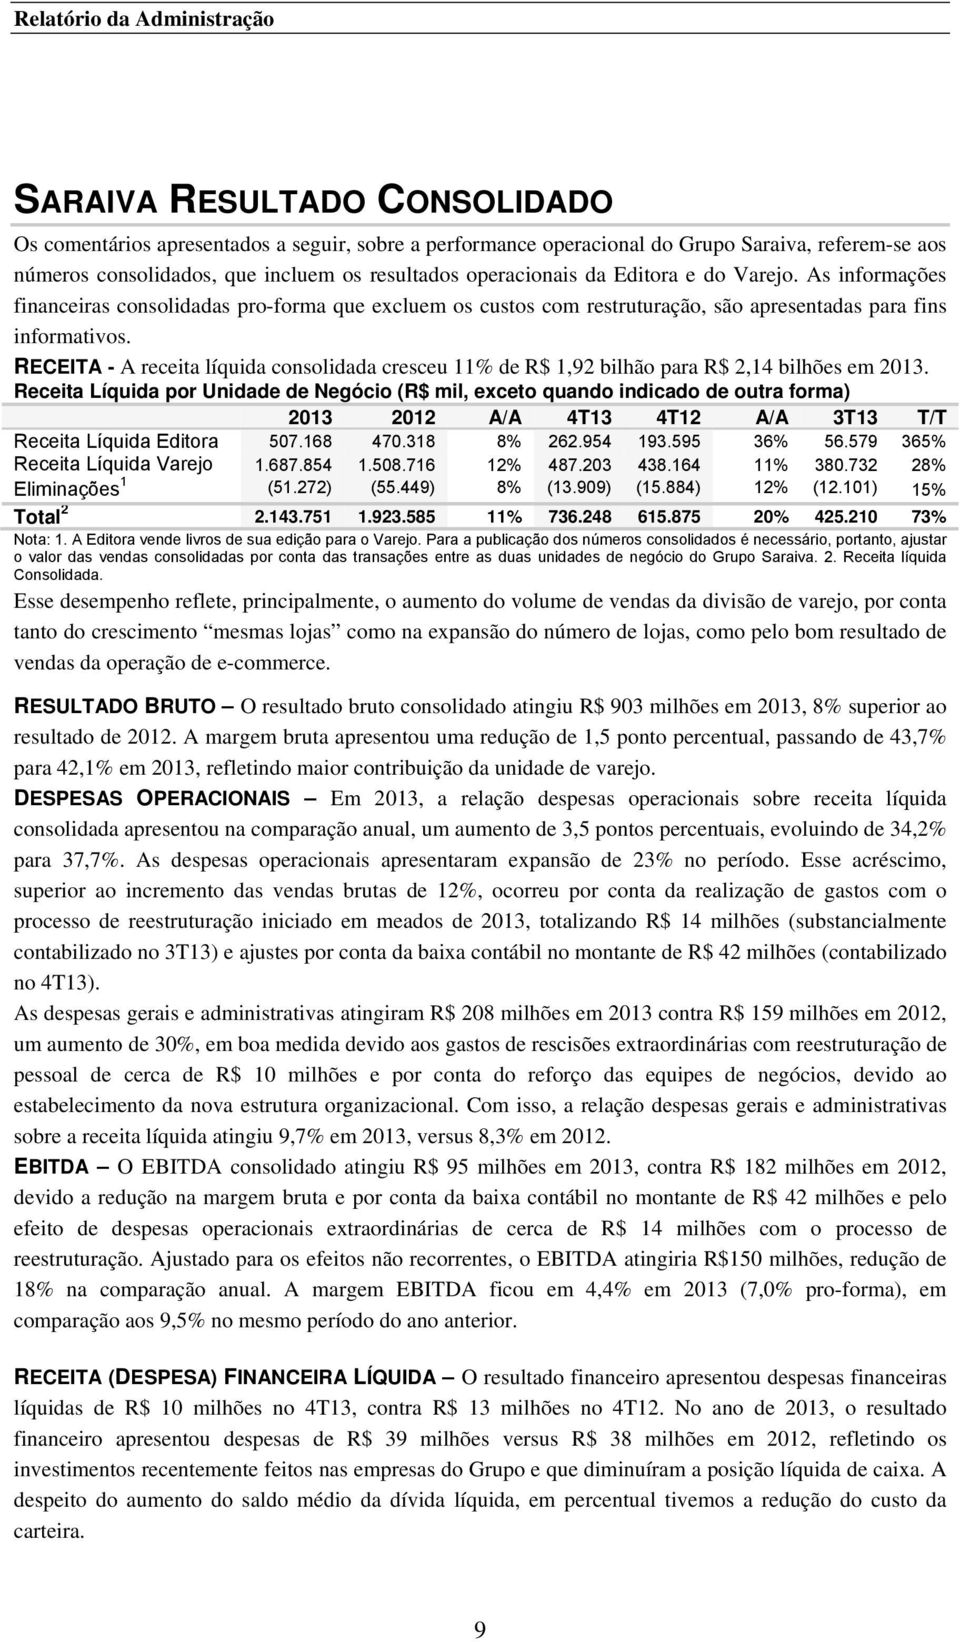 RECEITA - A receita líquida consolidada cresceu 11% de R$ 1,92 bilhão para R$ 2,14 bilhões em 2013.